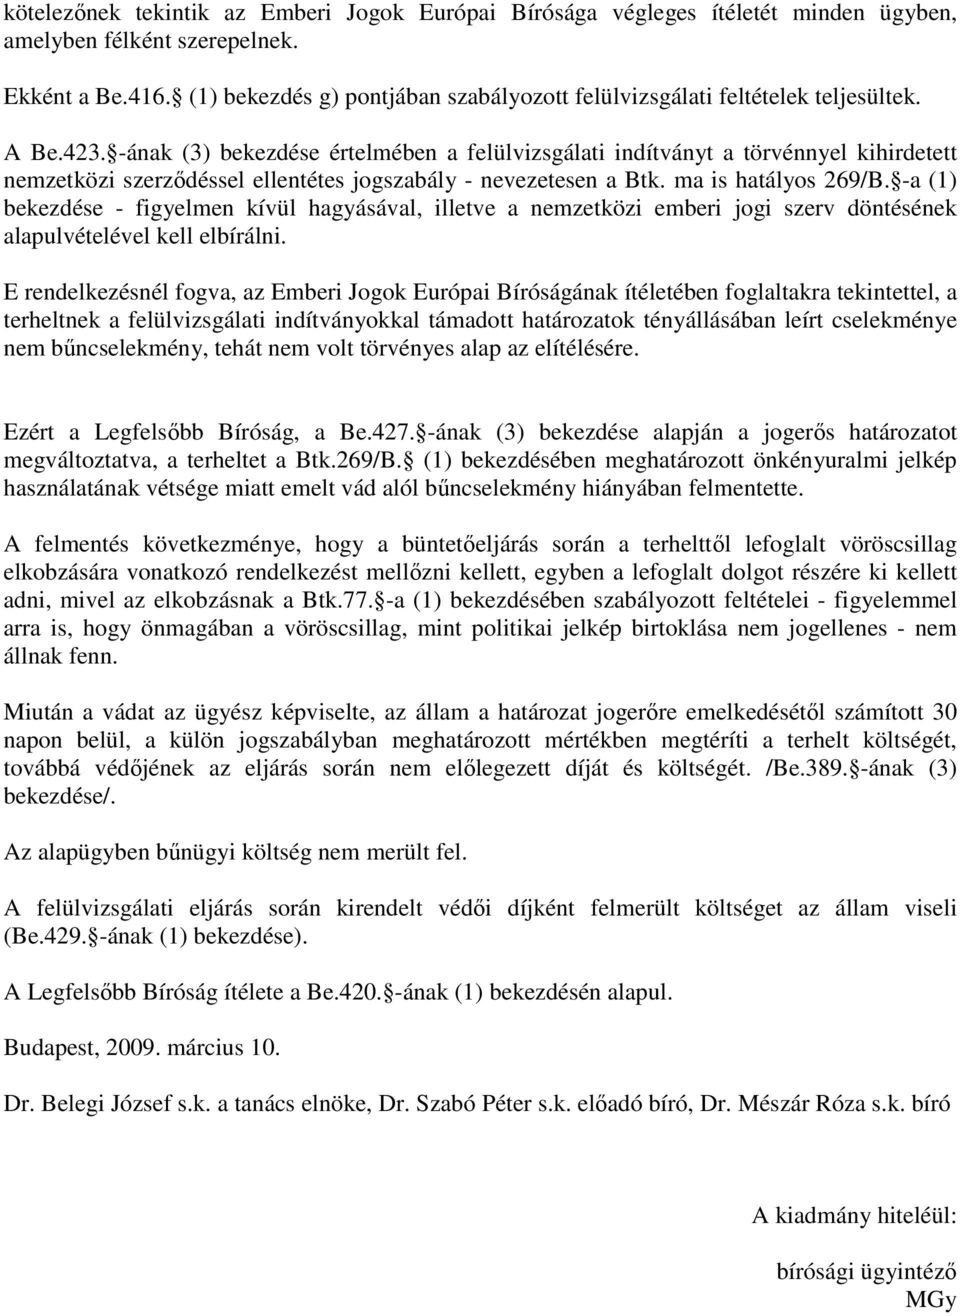 -ának (3) bekezdése értelmében a felülvizsgálati indítványt a törvénnyel kihirdetett nemzetközi szerzıdéssel ellentétes jogszabály - nevezetesen a Btk. ma is hatályos 269/B.